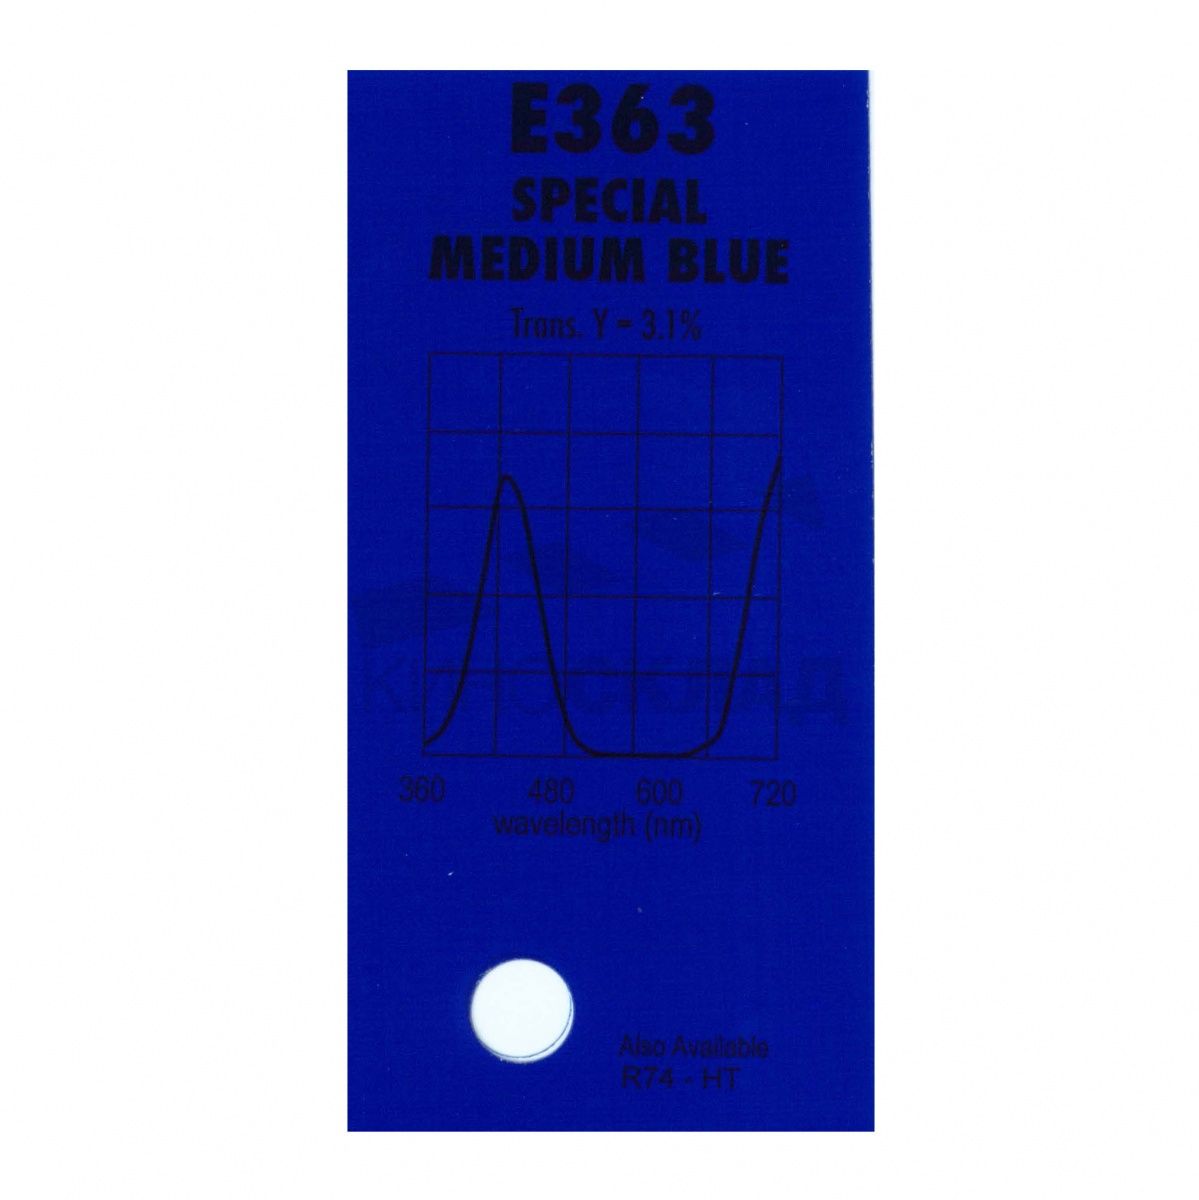 Детальная картинка товара LEE Filters # 363 Special Medium Blue в магазине Музыкальная Тема